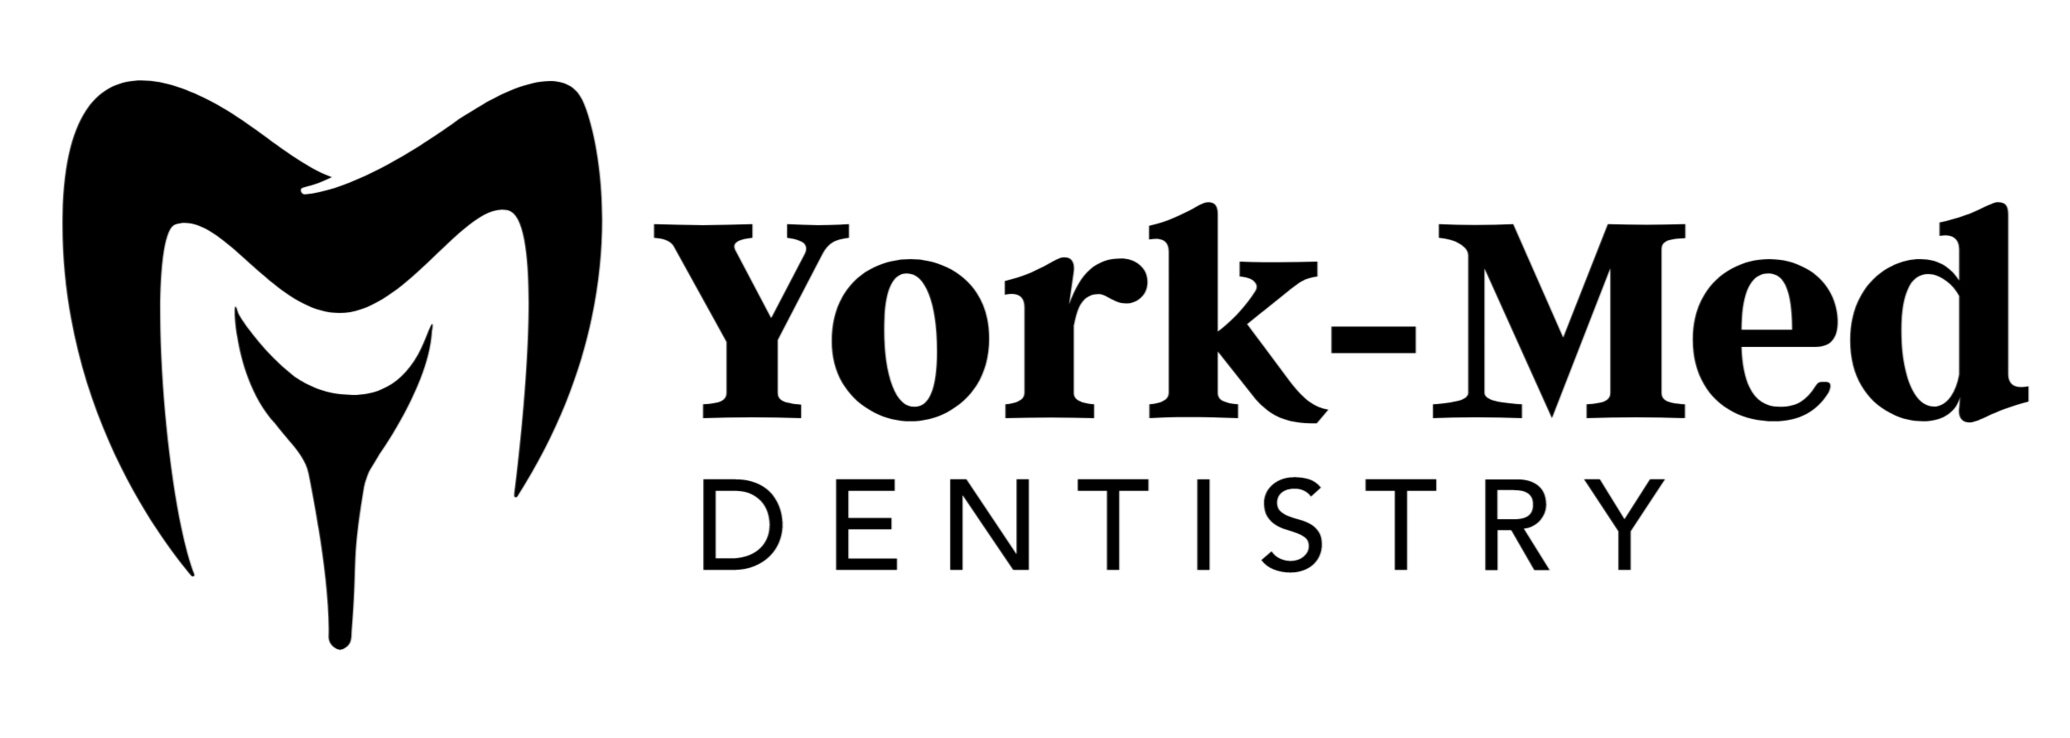 York-Med Dentistry